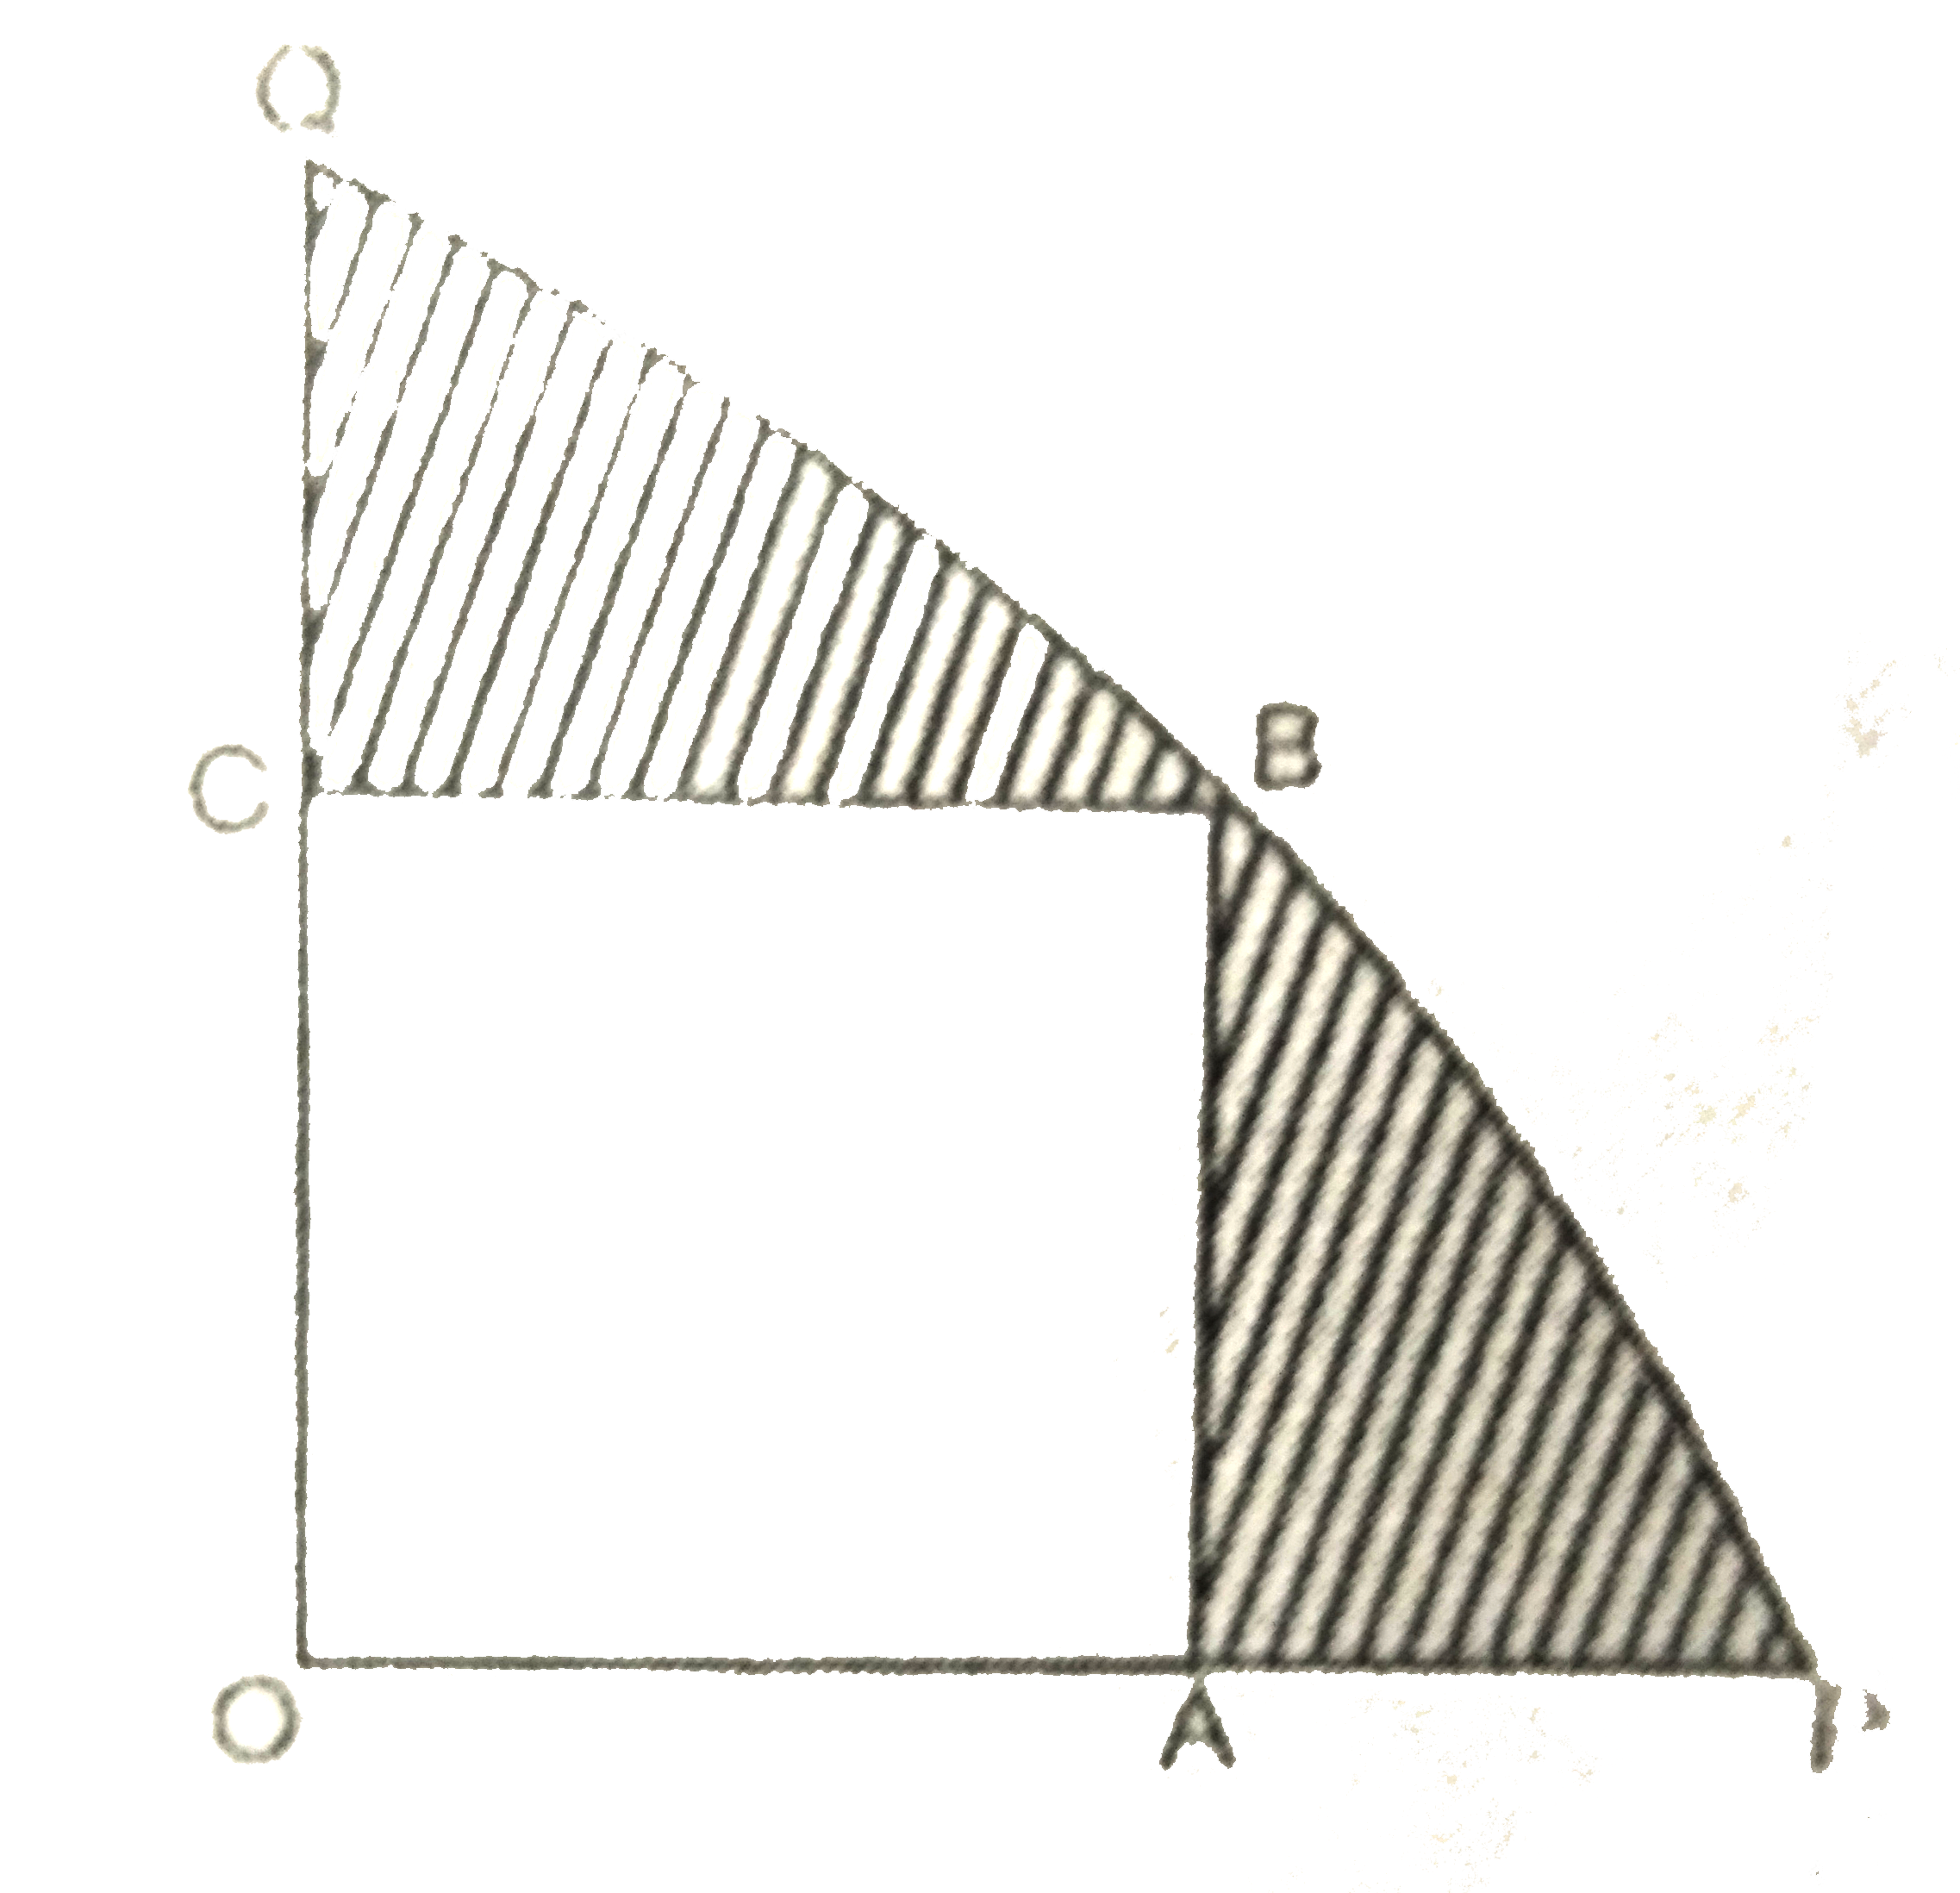 दी हुई आकृति में एक चतुर्थाश OPBQ के अन्तर्गत एक वर्ग OABC बना हुआ है। यदि OA=20 सेमी है, तो छायांकित भाग का क्षेत्रफल ज्ञात कीजिए। (pi=3.14)